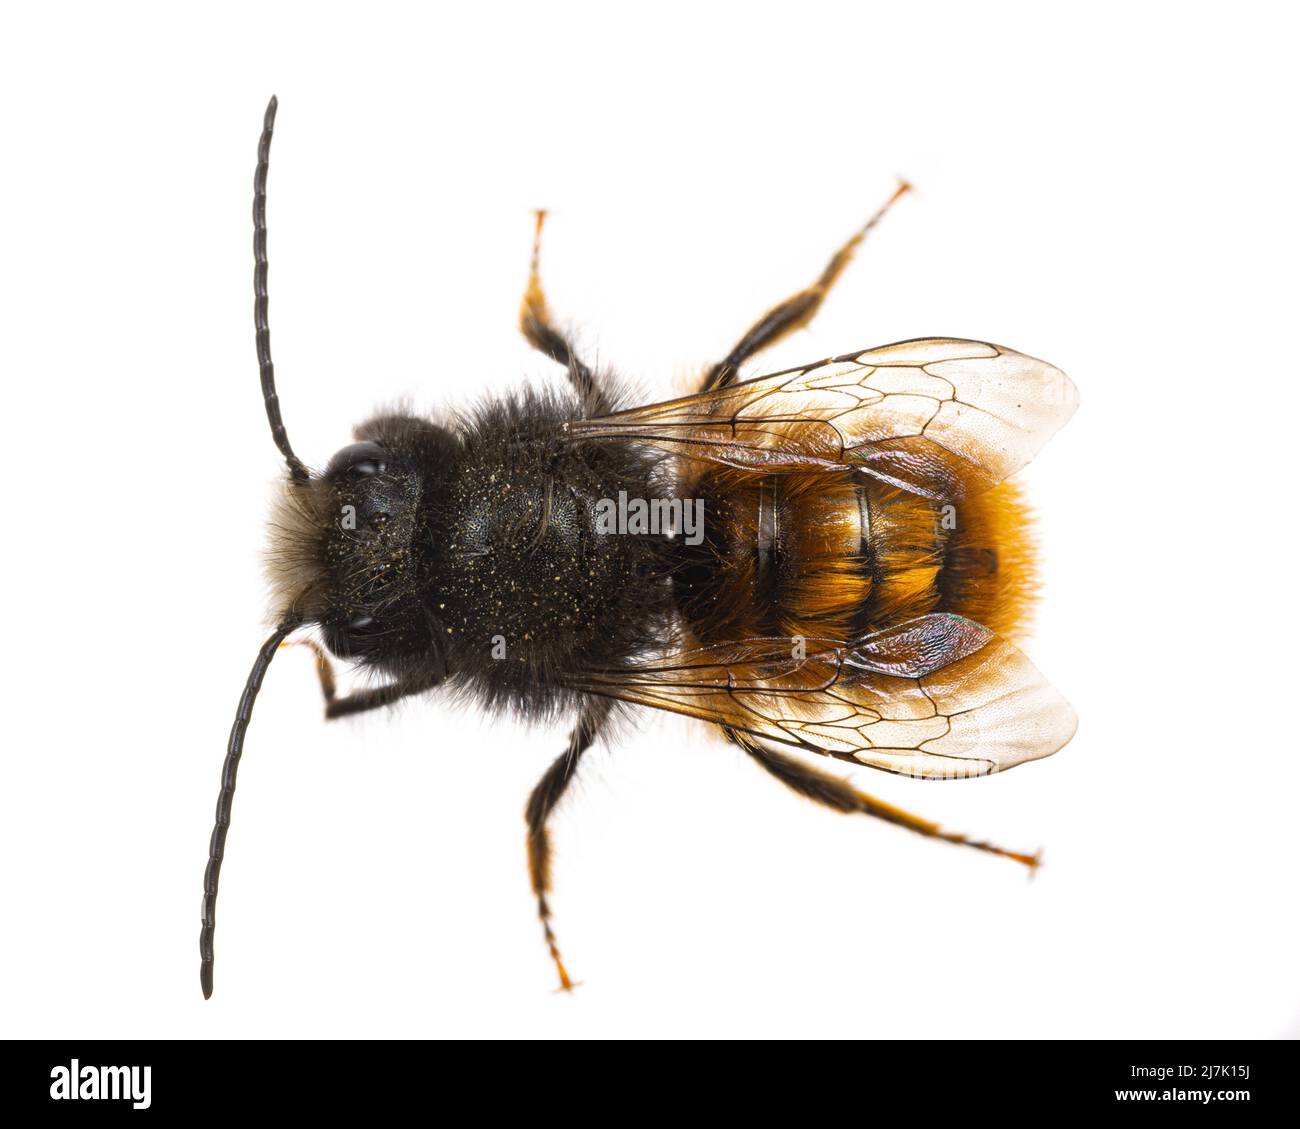 Insectes d'europe - abeilles: Vue de dessus macro de l'abeille mâle Osmia cornuta Orchard (german Gehoernte Mauerbiene) isolée sur fond blanc Banque D'Images